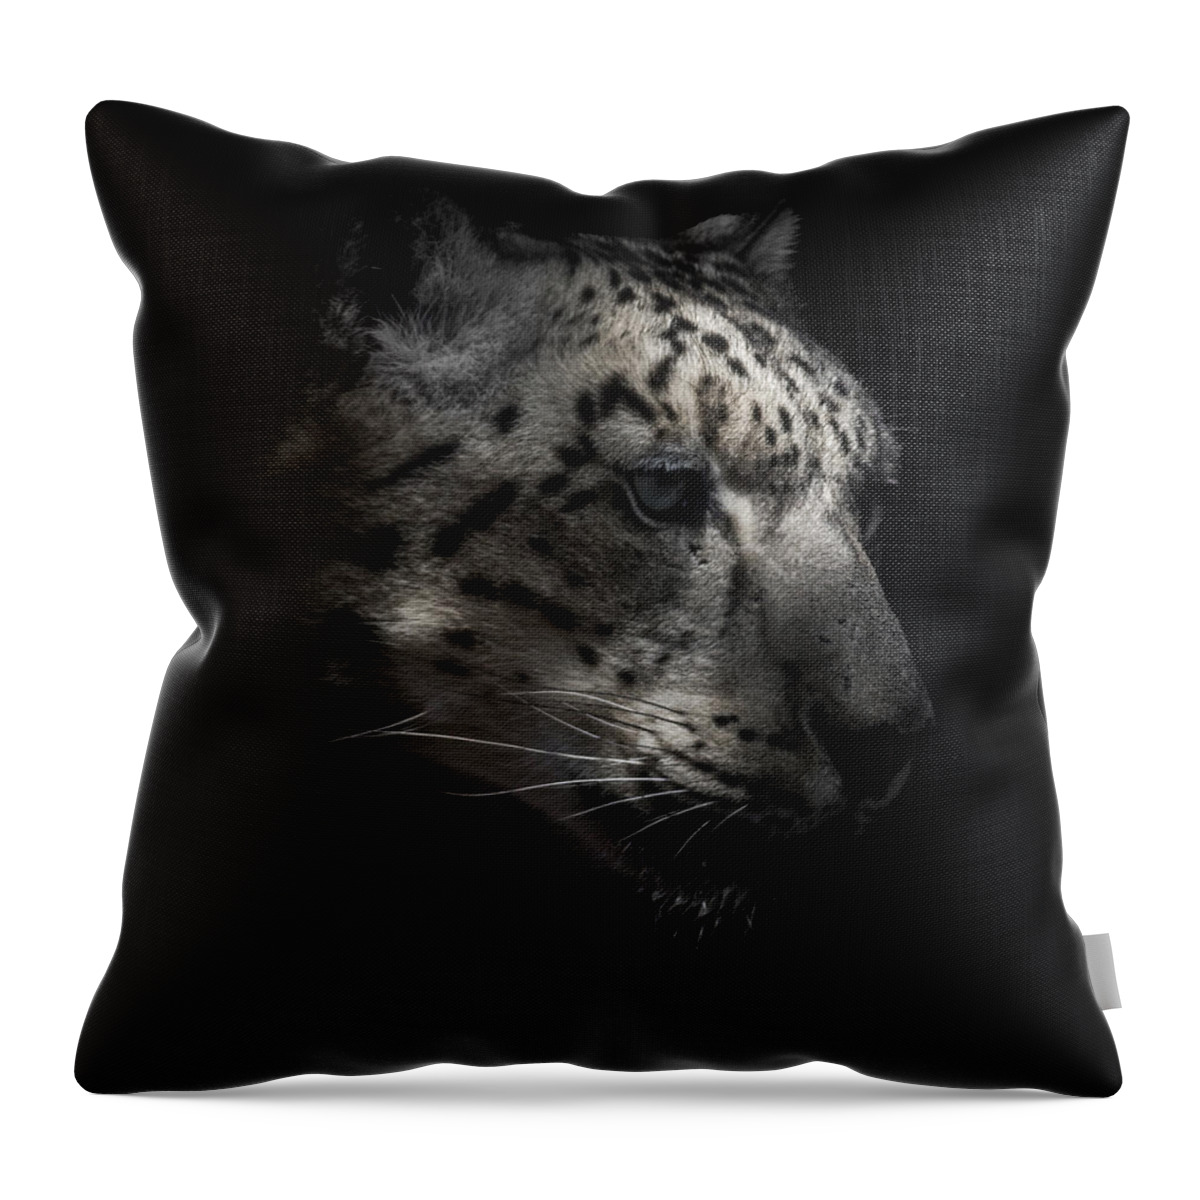 Snow Leopards Throw Pillow featuring the photograph Snow Leopard Portrait by Ernest Echols